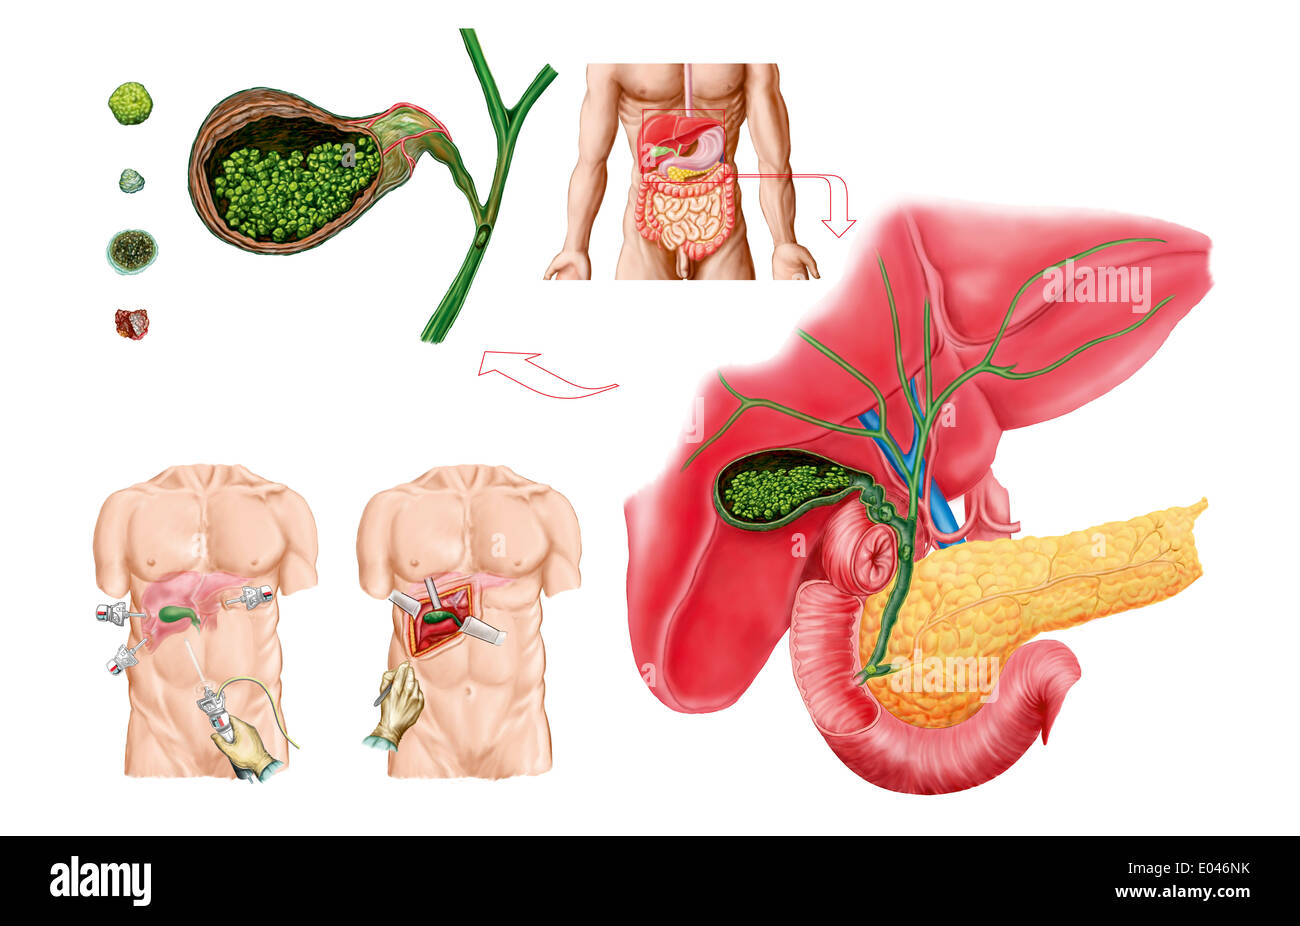 Illustration médicale montrant les calculs biliaires dans la vésicule  biliaire et de l'ablation chirurgicale de la vésicule biliaire, connu sous  le nom de cholécystectomie Photo Stock - Alamy